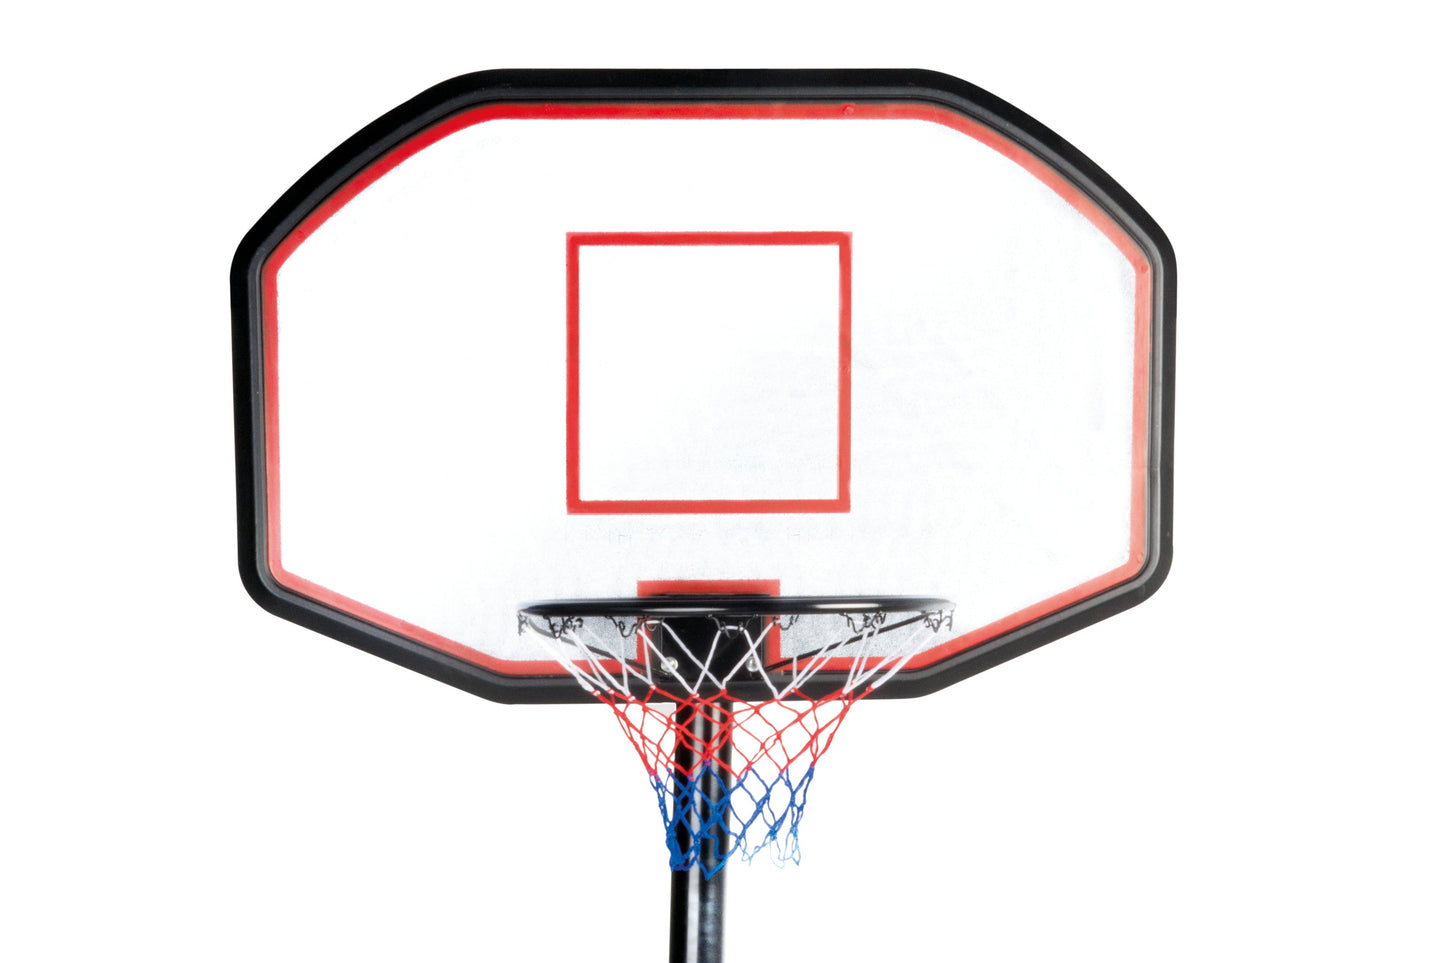 Verstelbare basketbalring op standaard - Hoogte tot 3.05 meter verstelbaar - Bivakshop